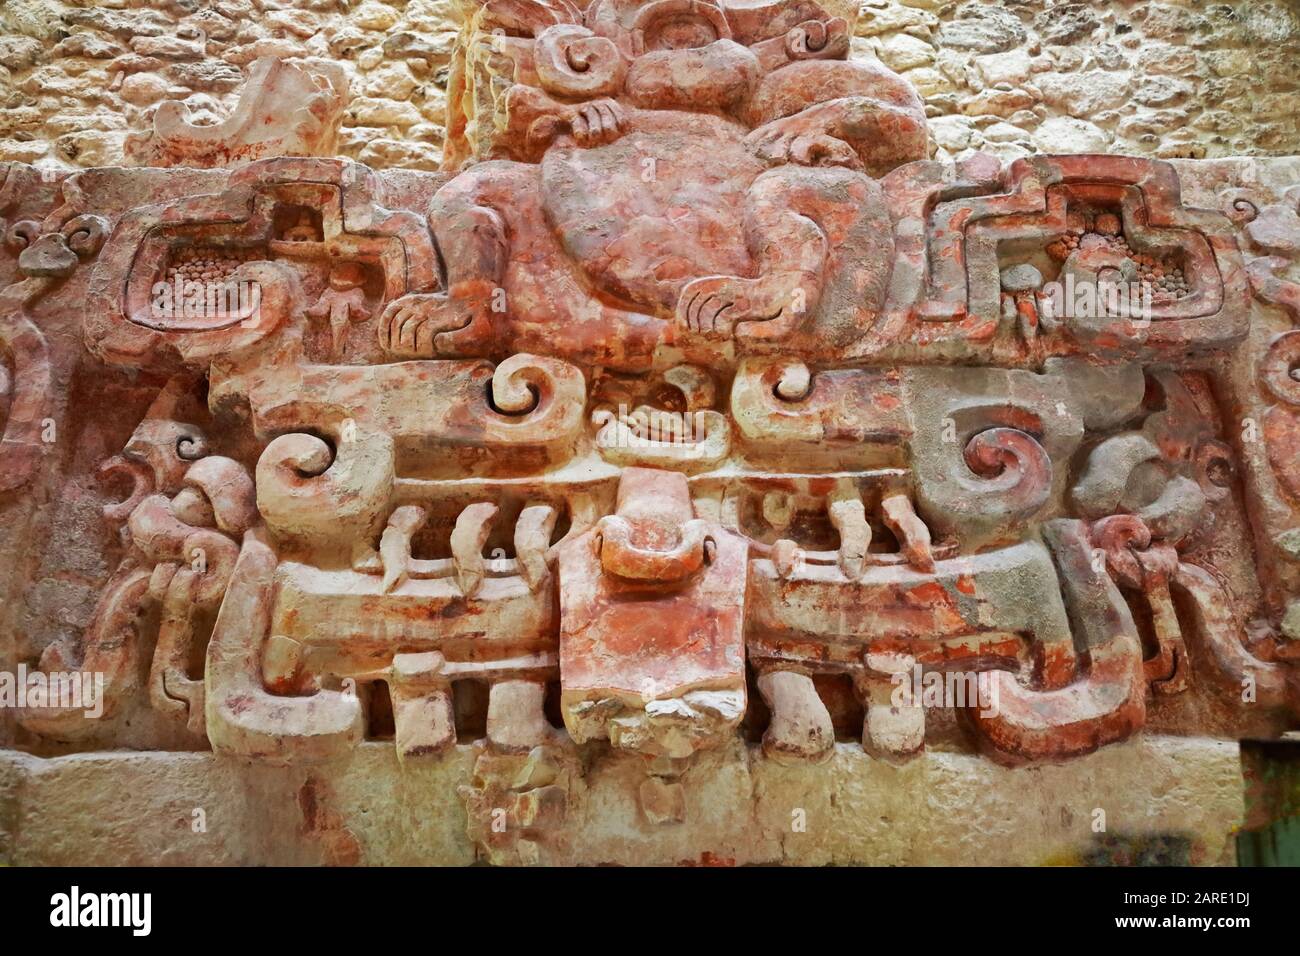 Eine Darstellung des Affengottes durchkracht auf einer Maske eines drachenartigen gottes in einem stuckierten Fries in der Struktur I Tempel der antiken Maya-Stadt von Stockfoto